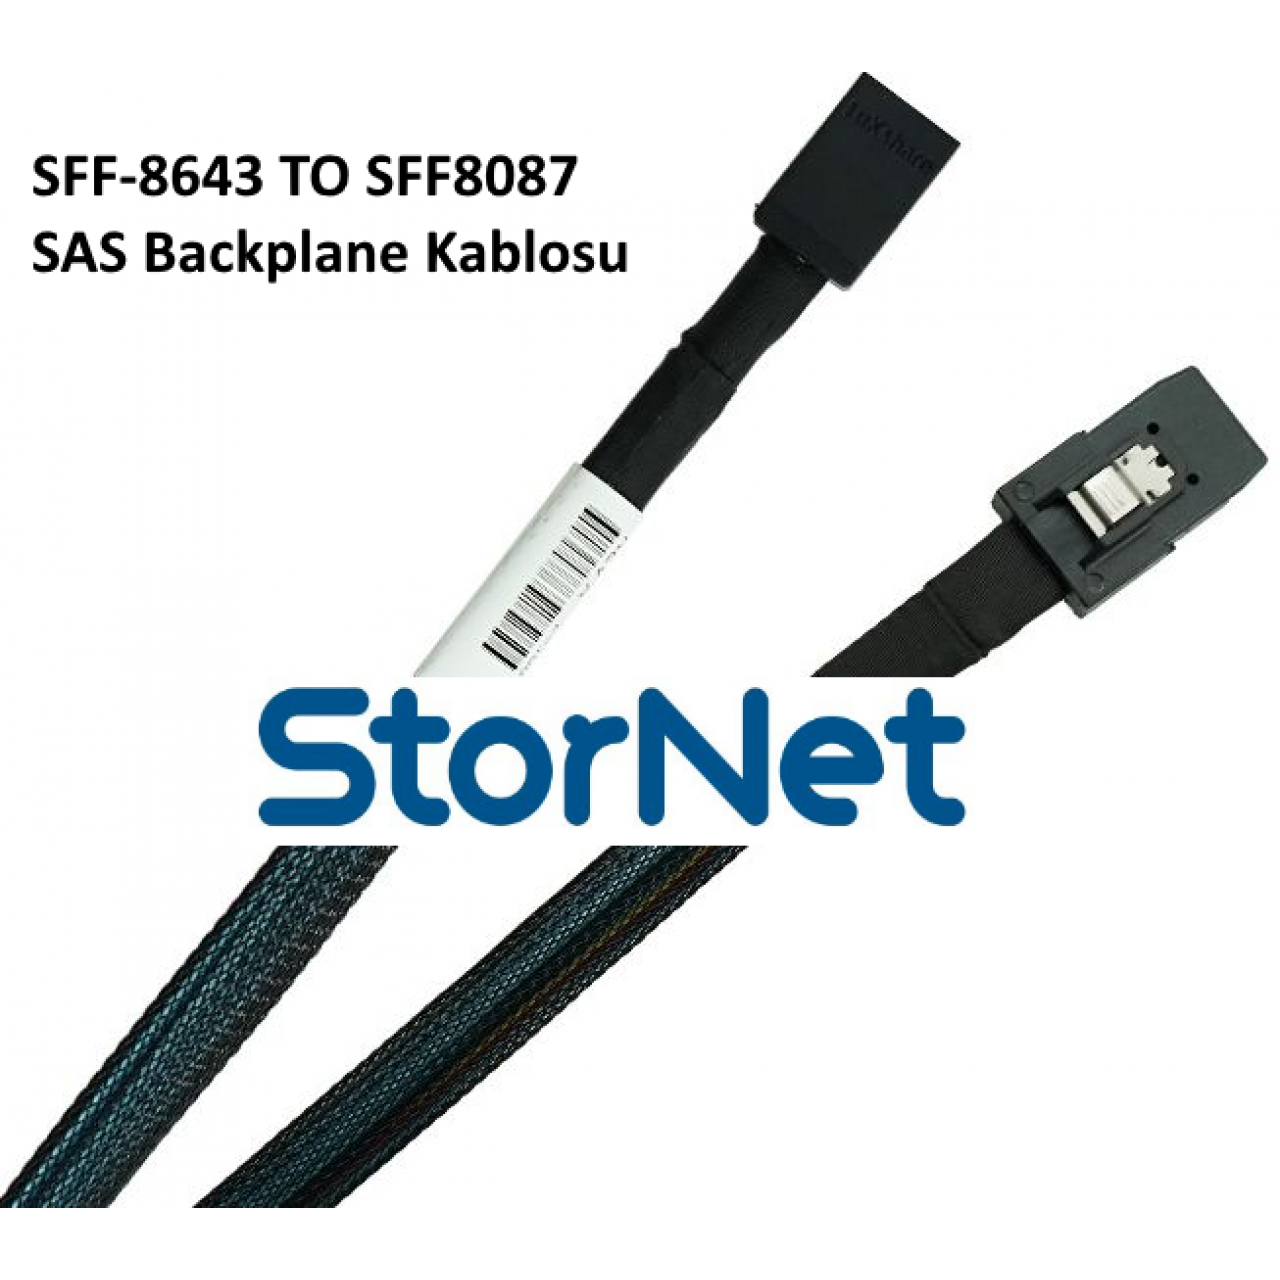 SFF8087 to SFF8643 SAS BackPlane Kablosu 1 Metre